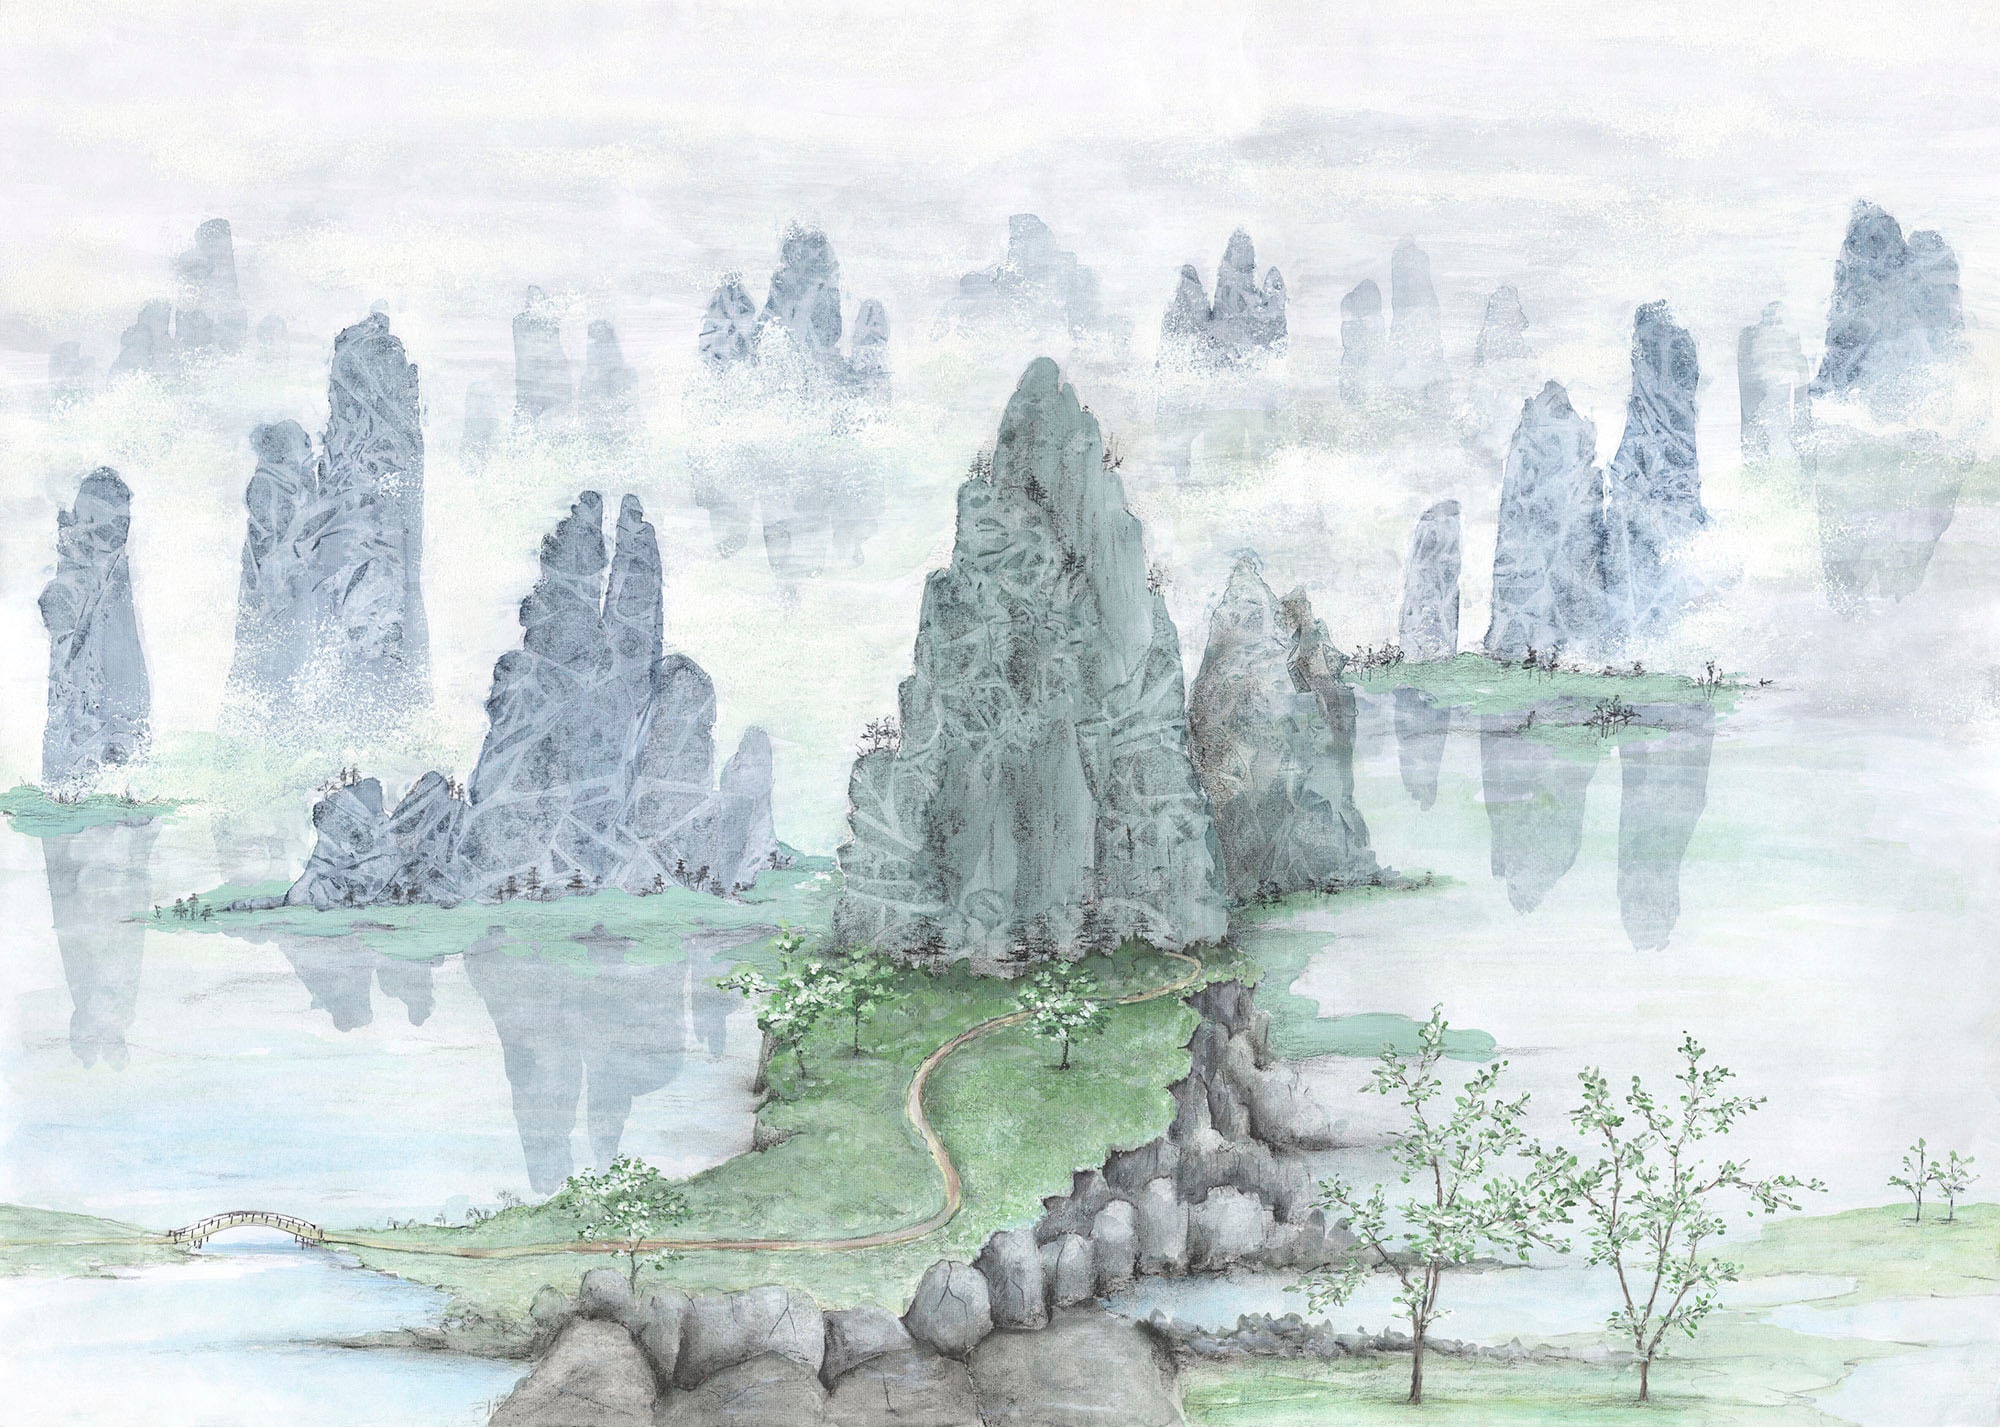 Komar Fototapete »Vlies Fototapete - Fairyland - Größe 300 x 250 cm«, bedru günstig online kaufen